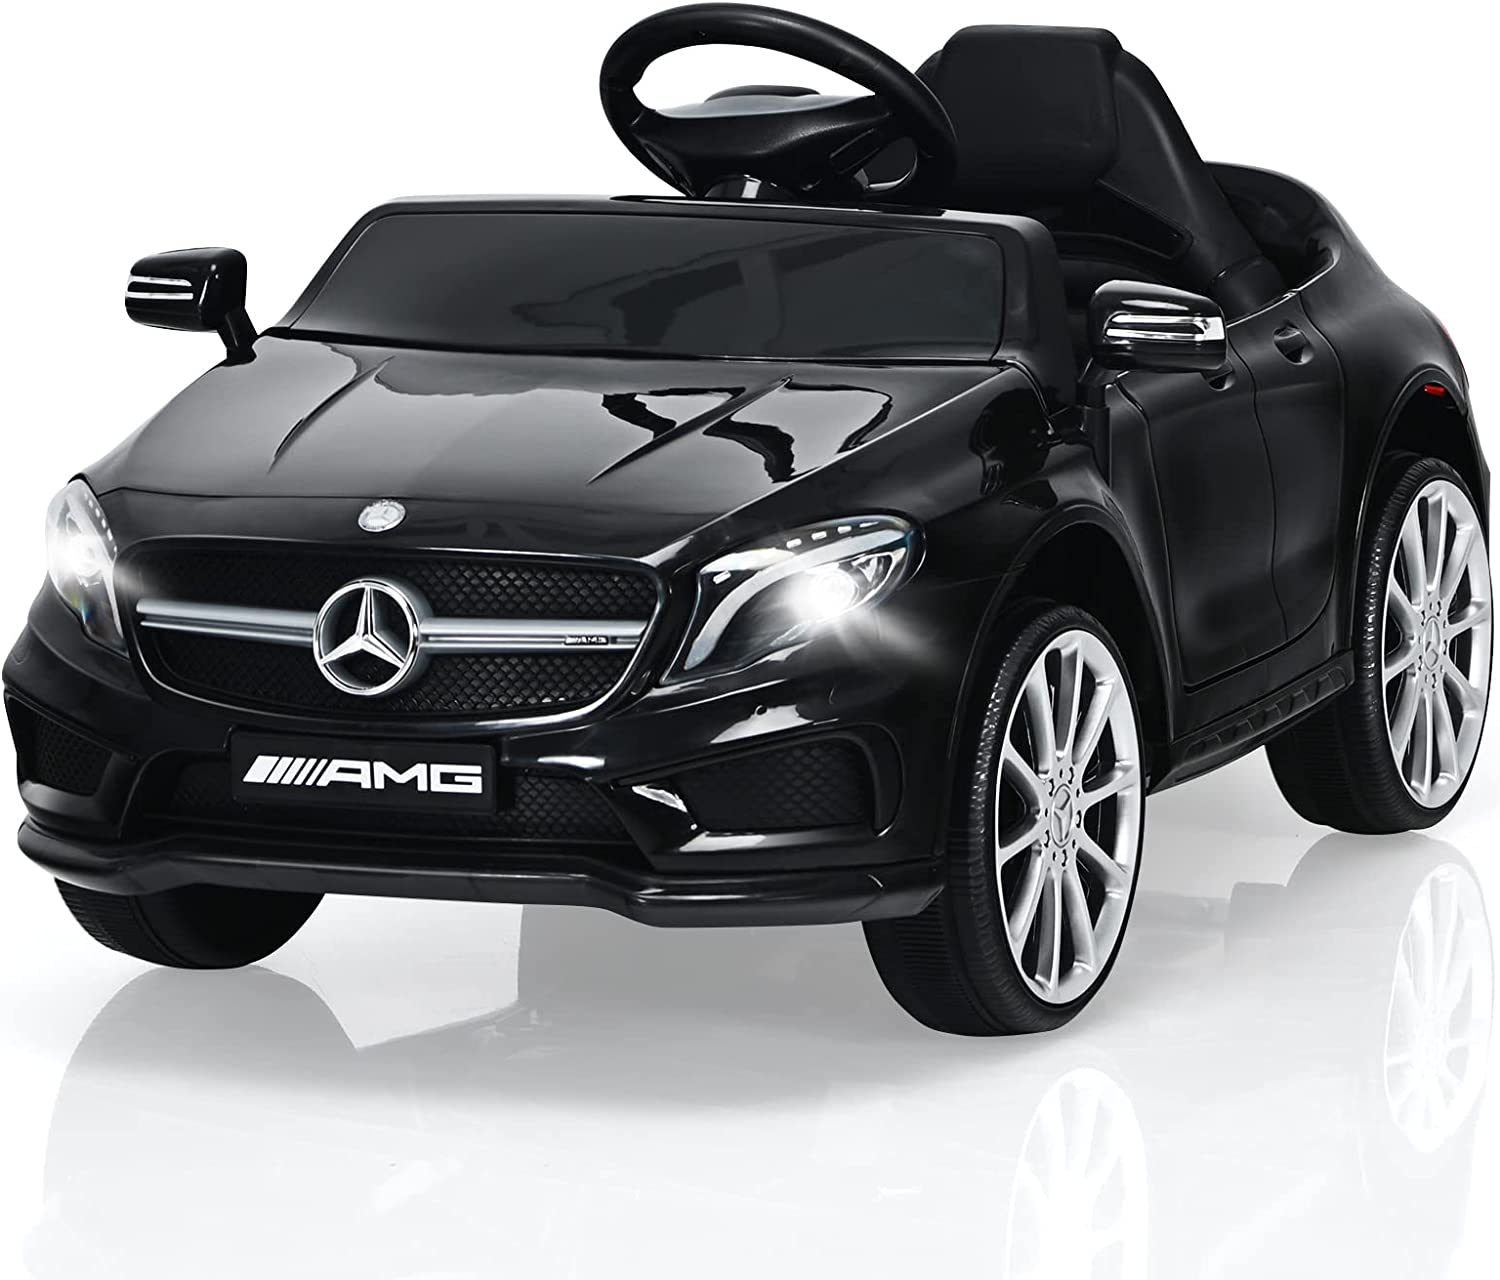 Voiture électrique enfant 12 volts - Mercedes AMG GLA